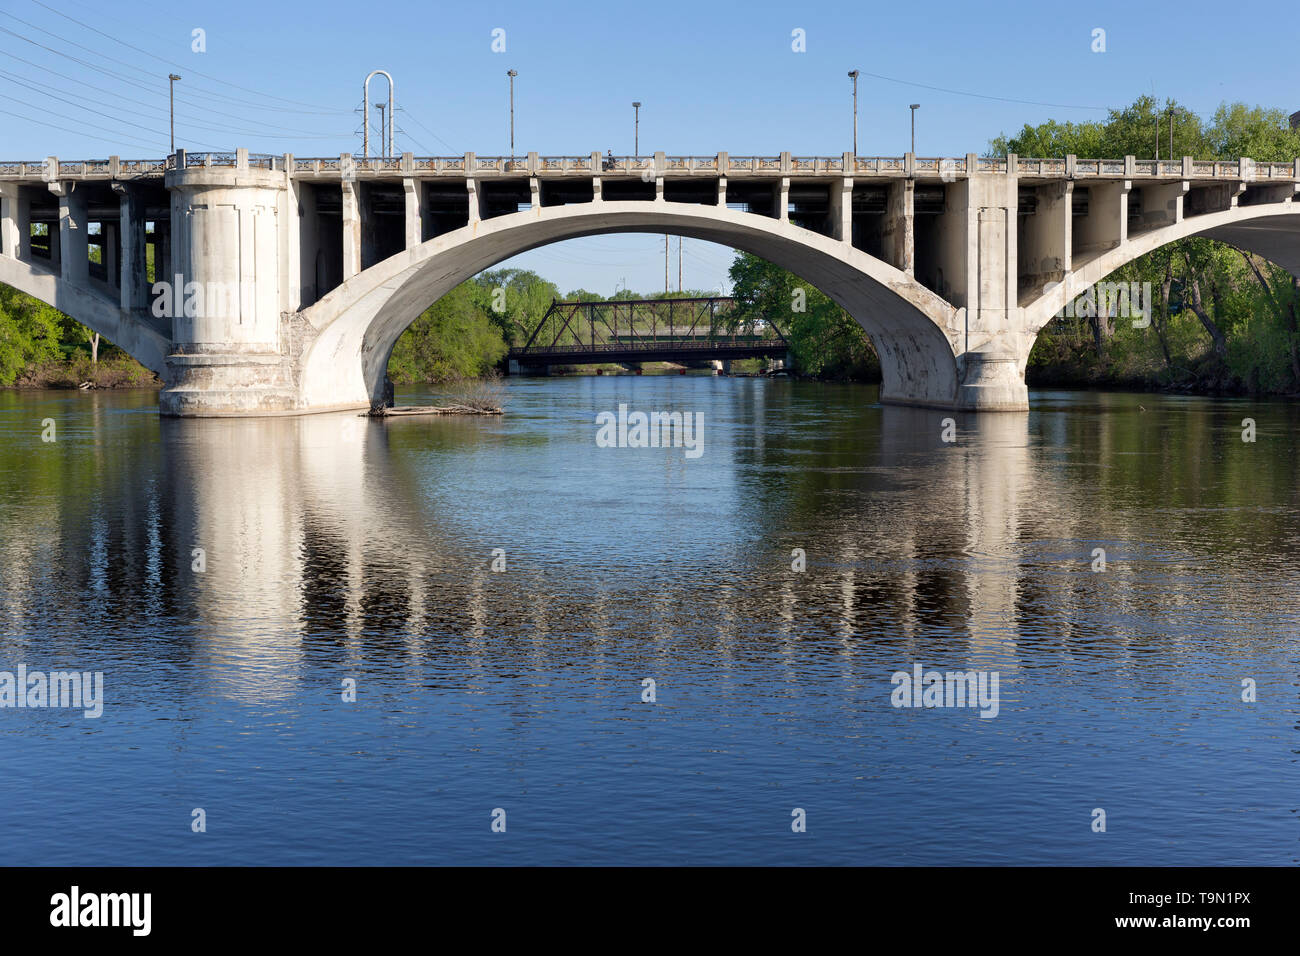 Dettaglio della Terza Avenue ponte che attraversa il fiume Mississippi nel centro di Minneapolis, Minnesota. Il ponte è stato progettato da Frederick W. Cappelen. Foto Stock